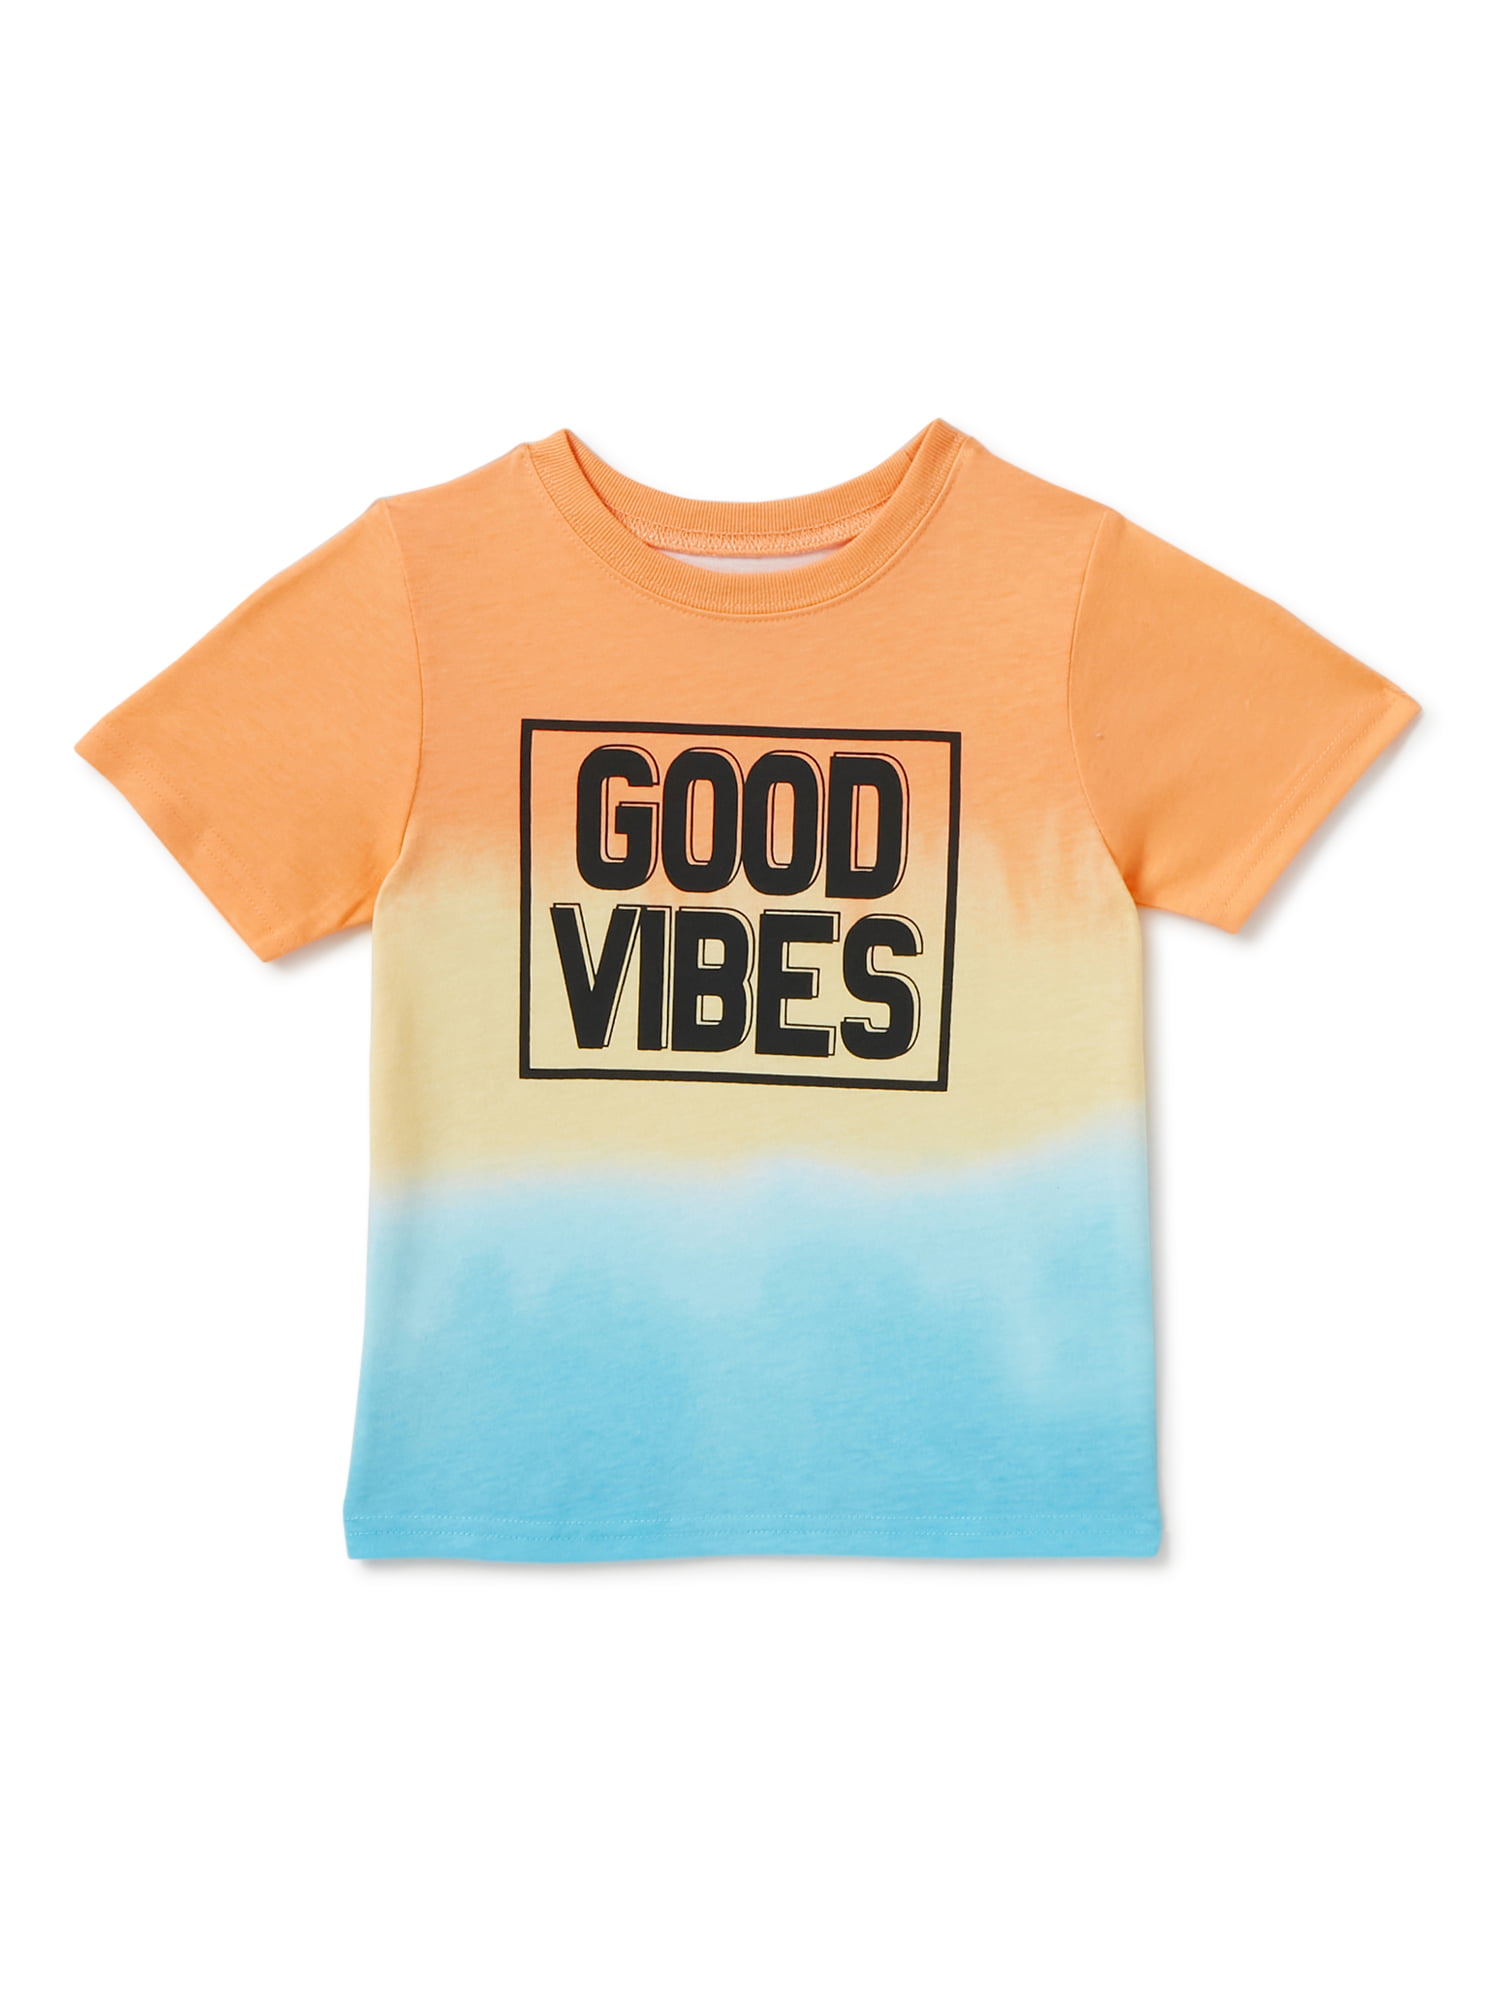 Kids crew neck t-shirt Lighten Up home wardrobe positive vibe children's unisex THUNDER KIDO